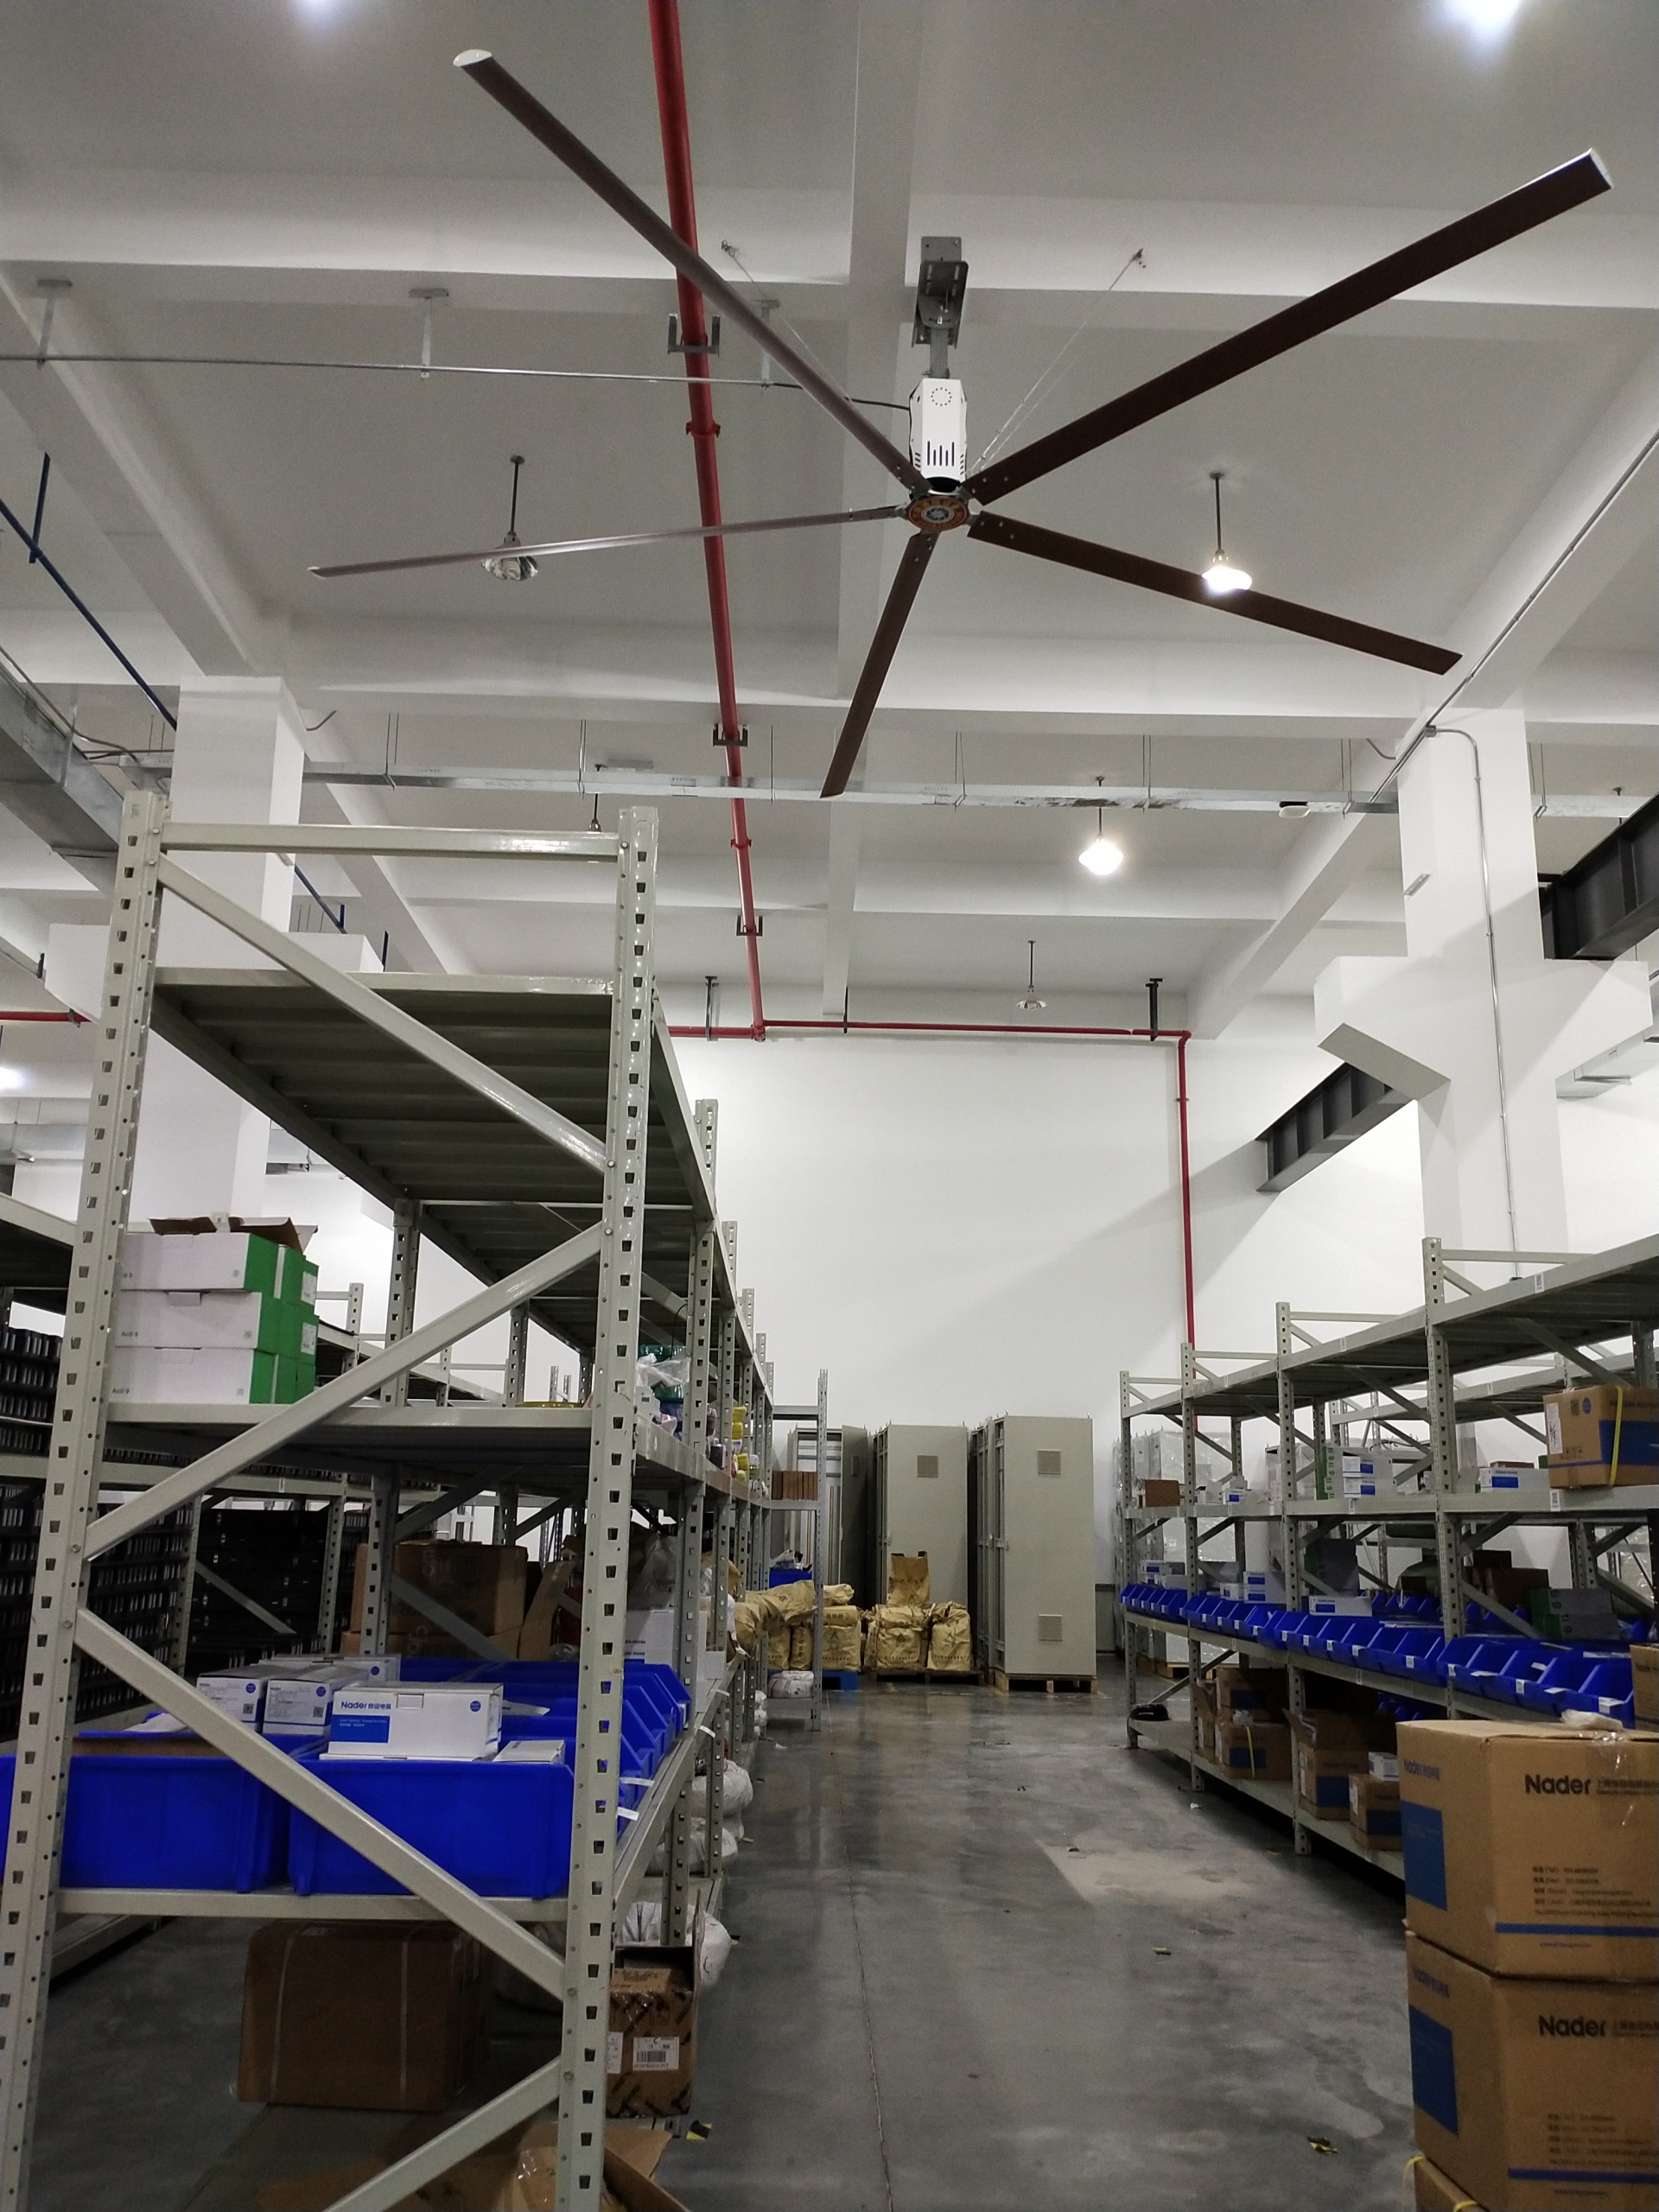 供应厂房工业大吊扇杭州高大空间用六顺品牌LS54型号通风降温改善员工作业环境的直径5.4米工业吊扇